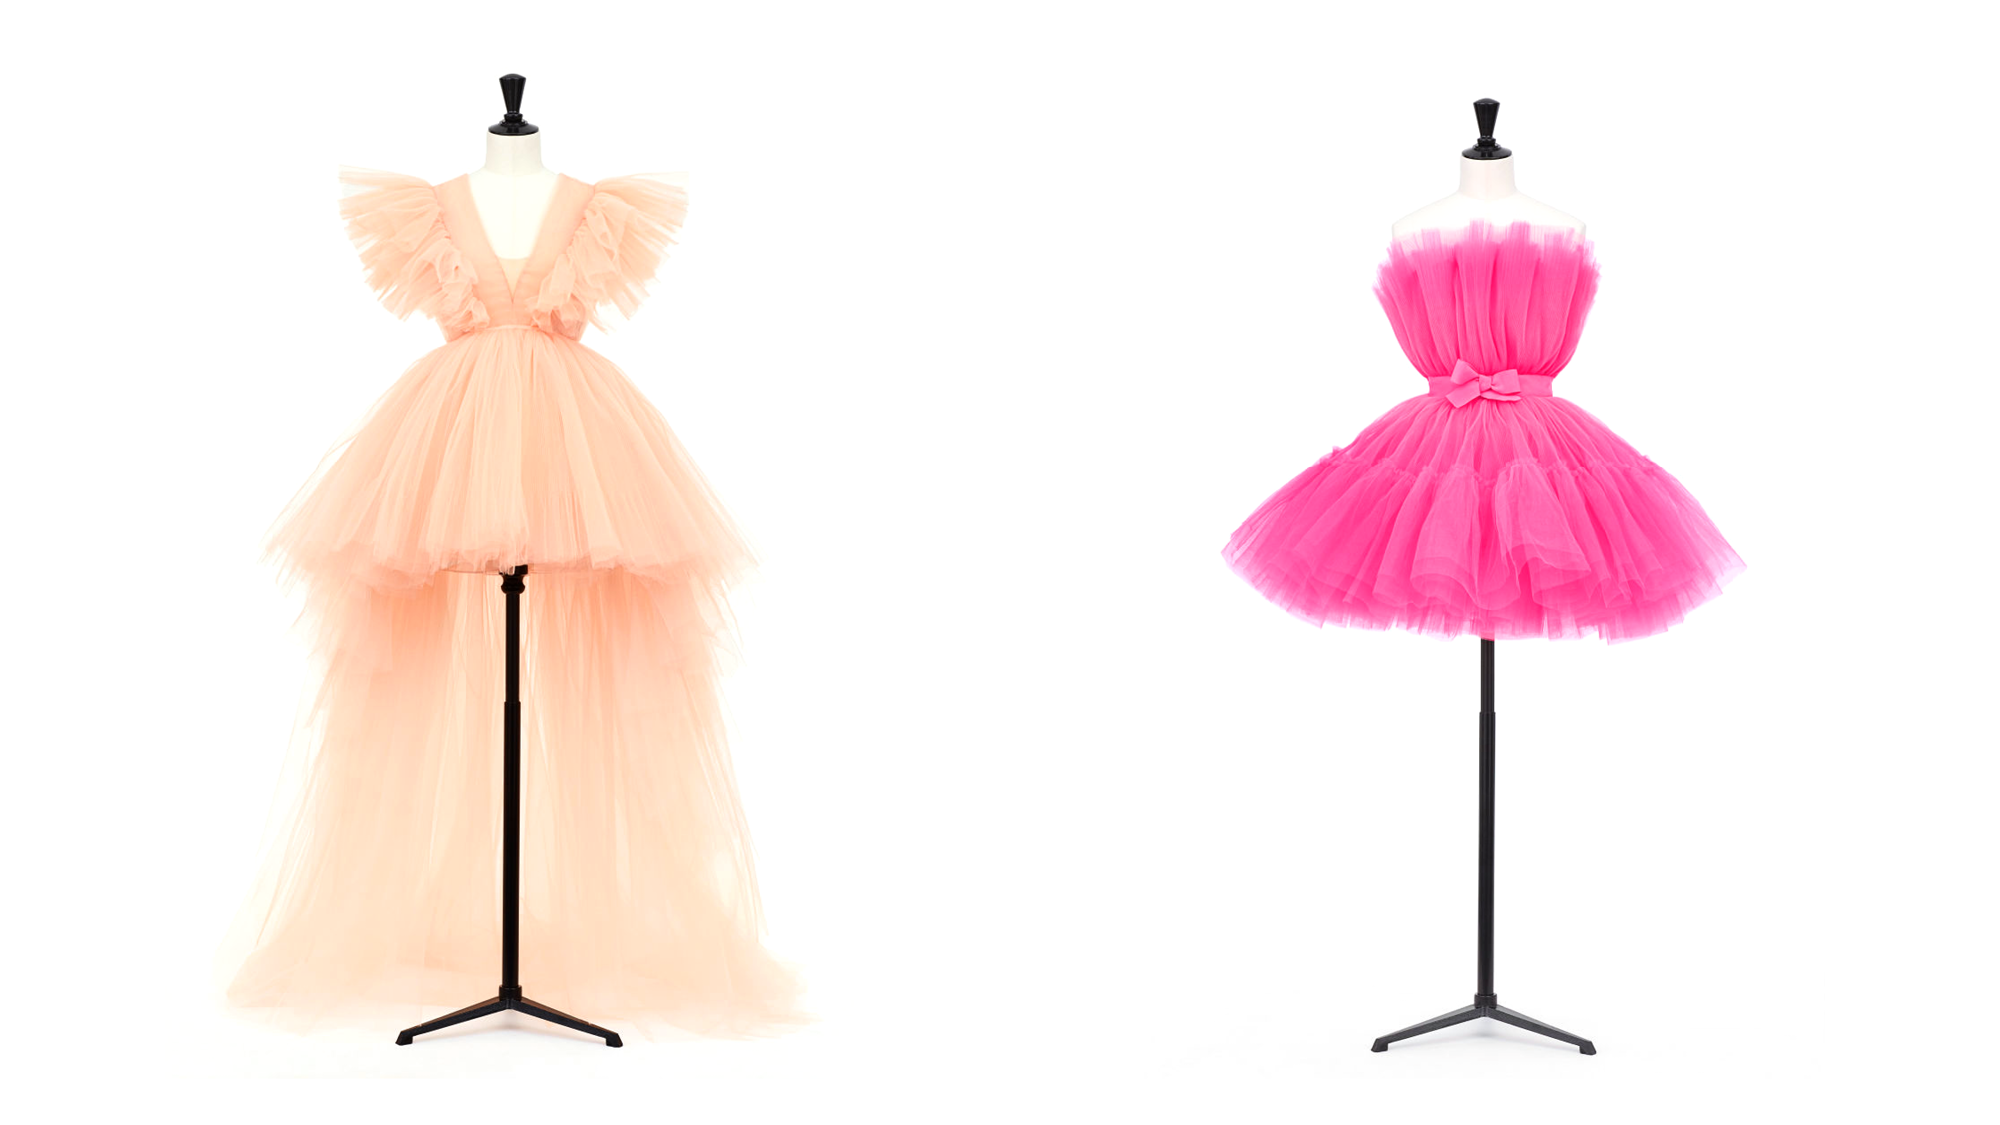 שמלות משיתוף הפעולה של ג'יאמבטיסטה ואלי ו- H&amp;M, מחירים: 399 דולר לשמלה הימנית ו-550 דולר לשמאלית | צילום מסך מהאתר של H&amp;M